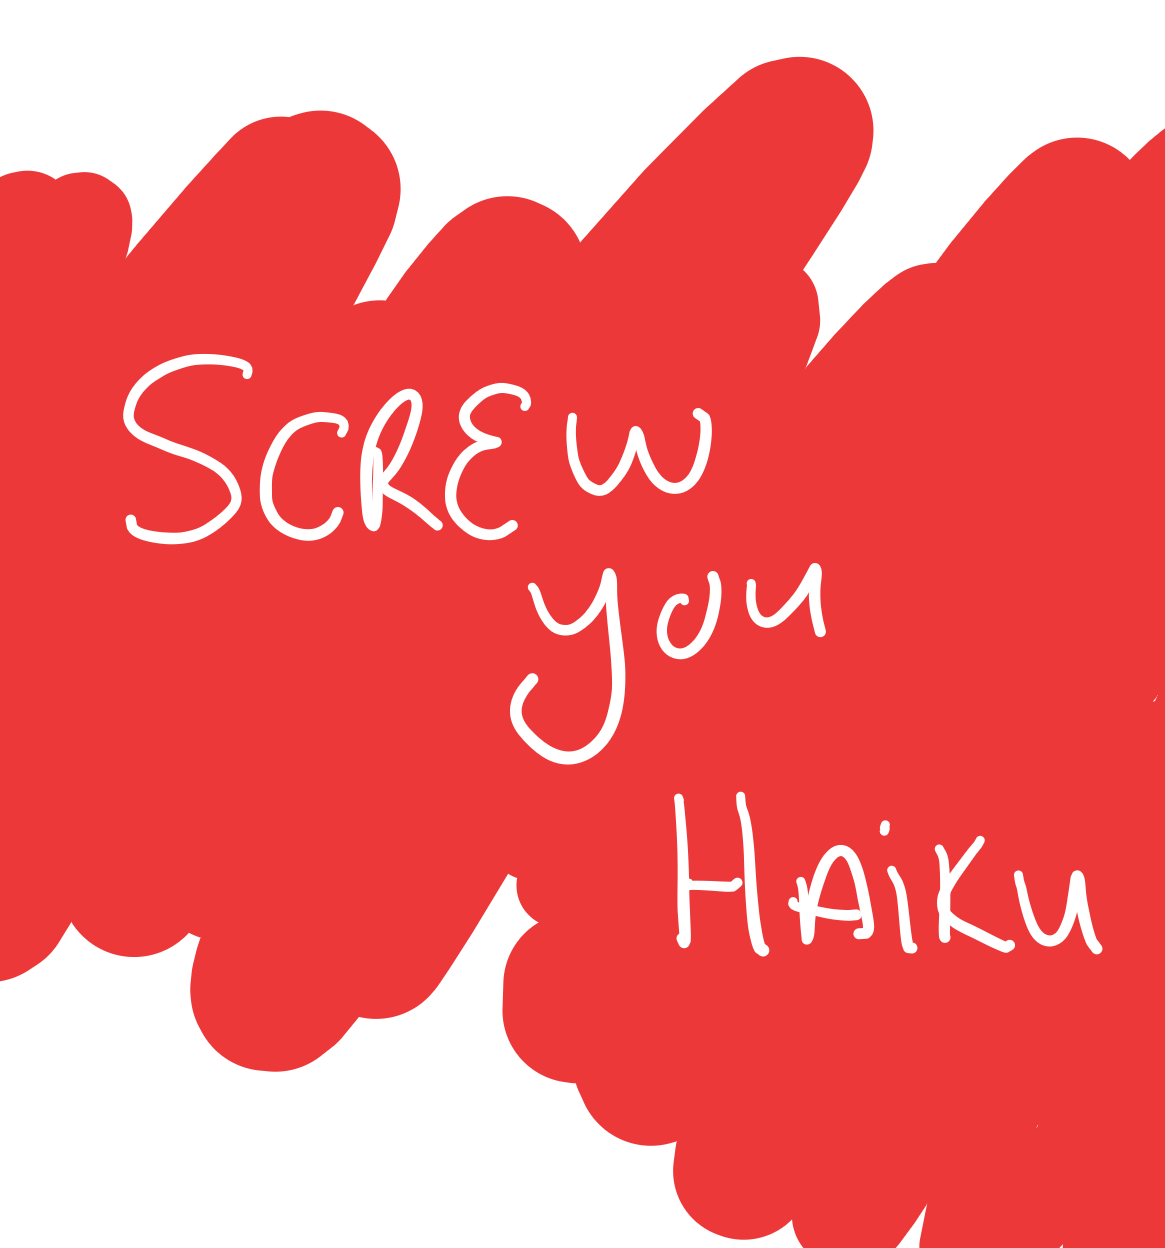 Yup, Screw you haiku